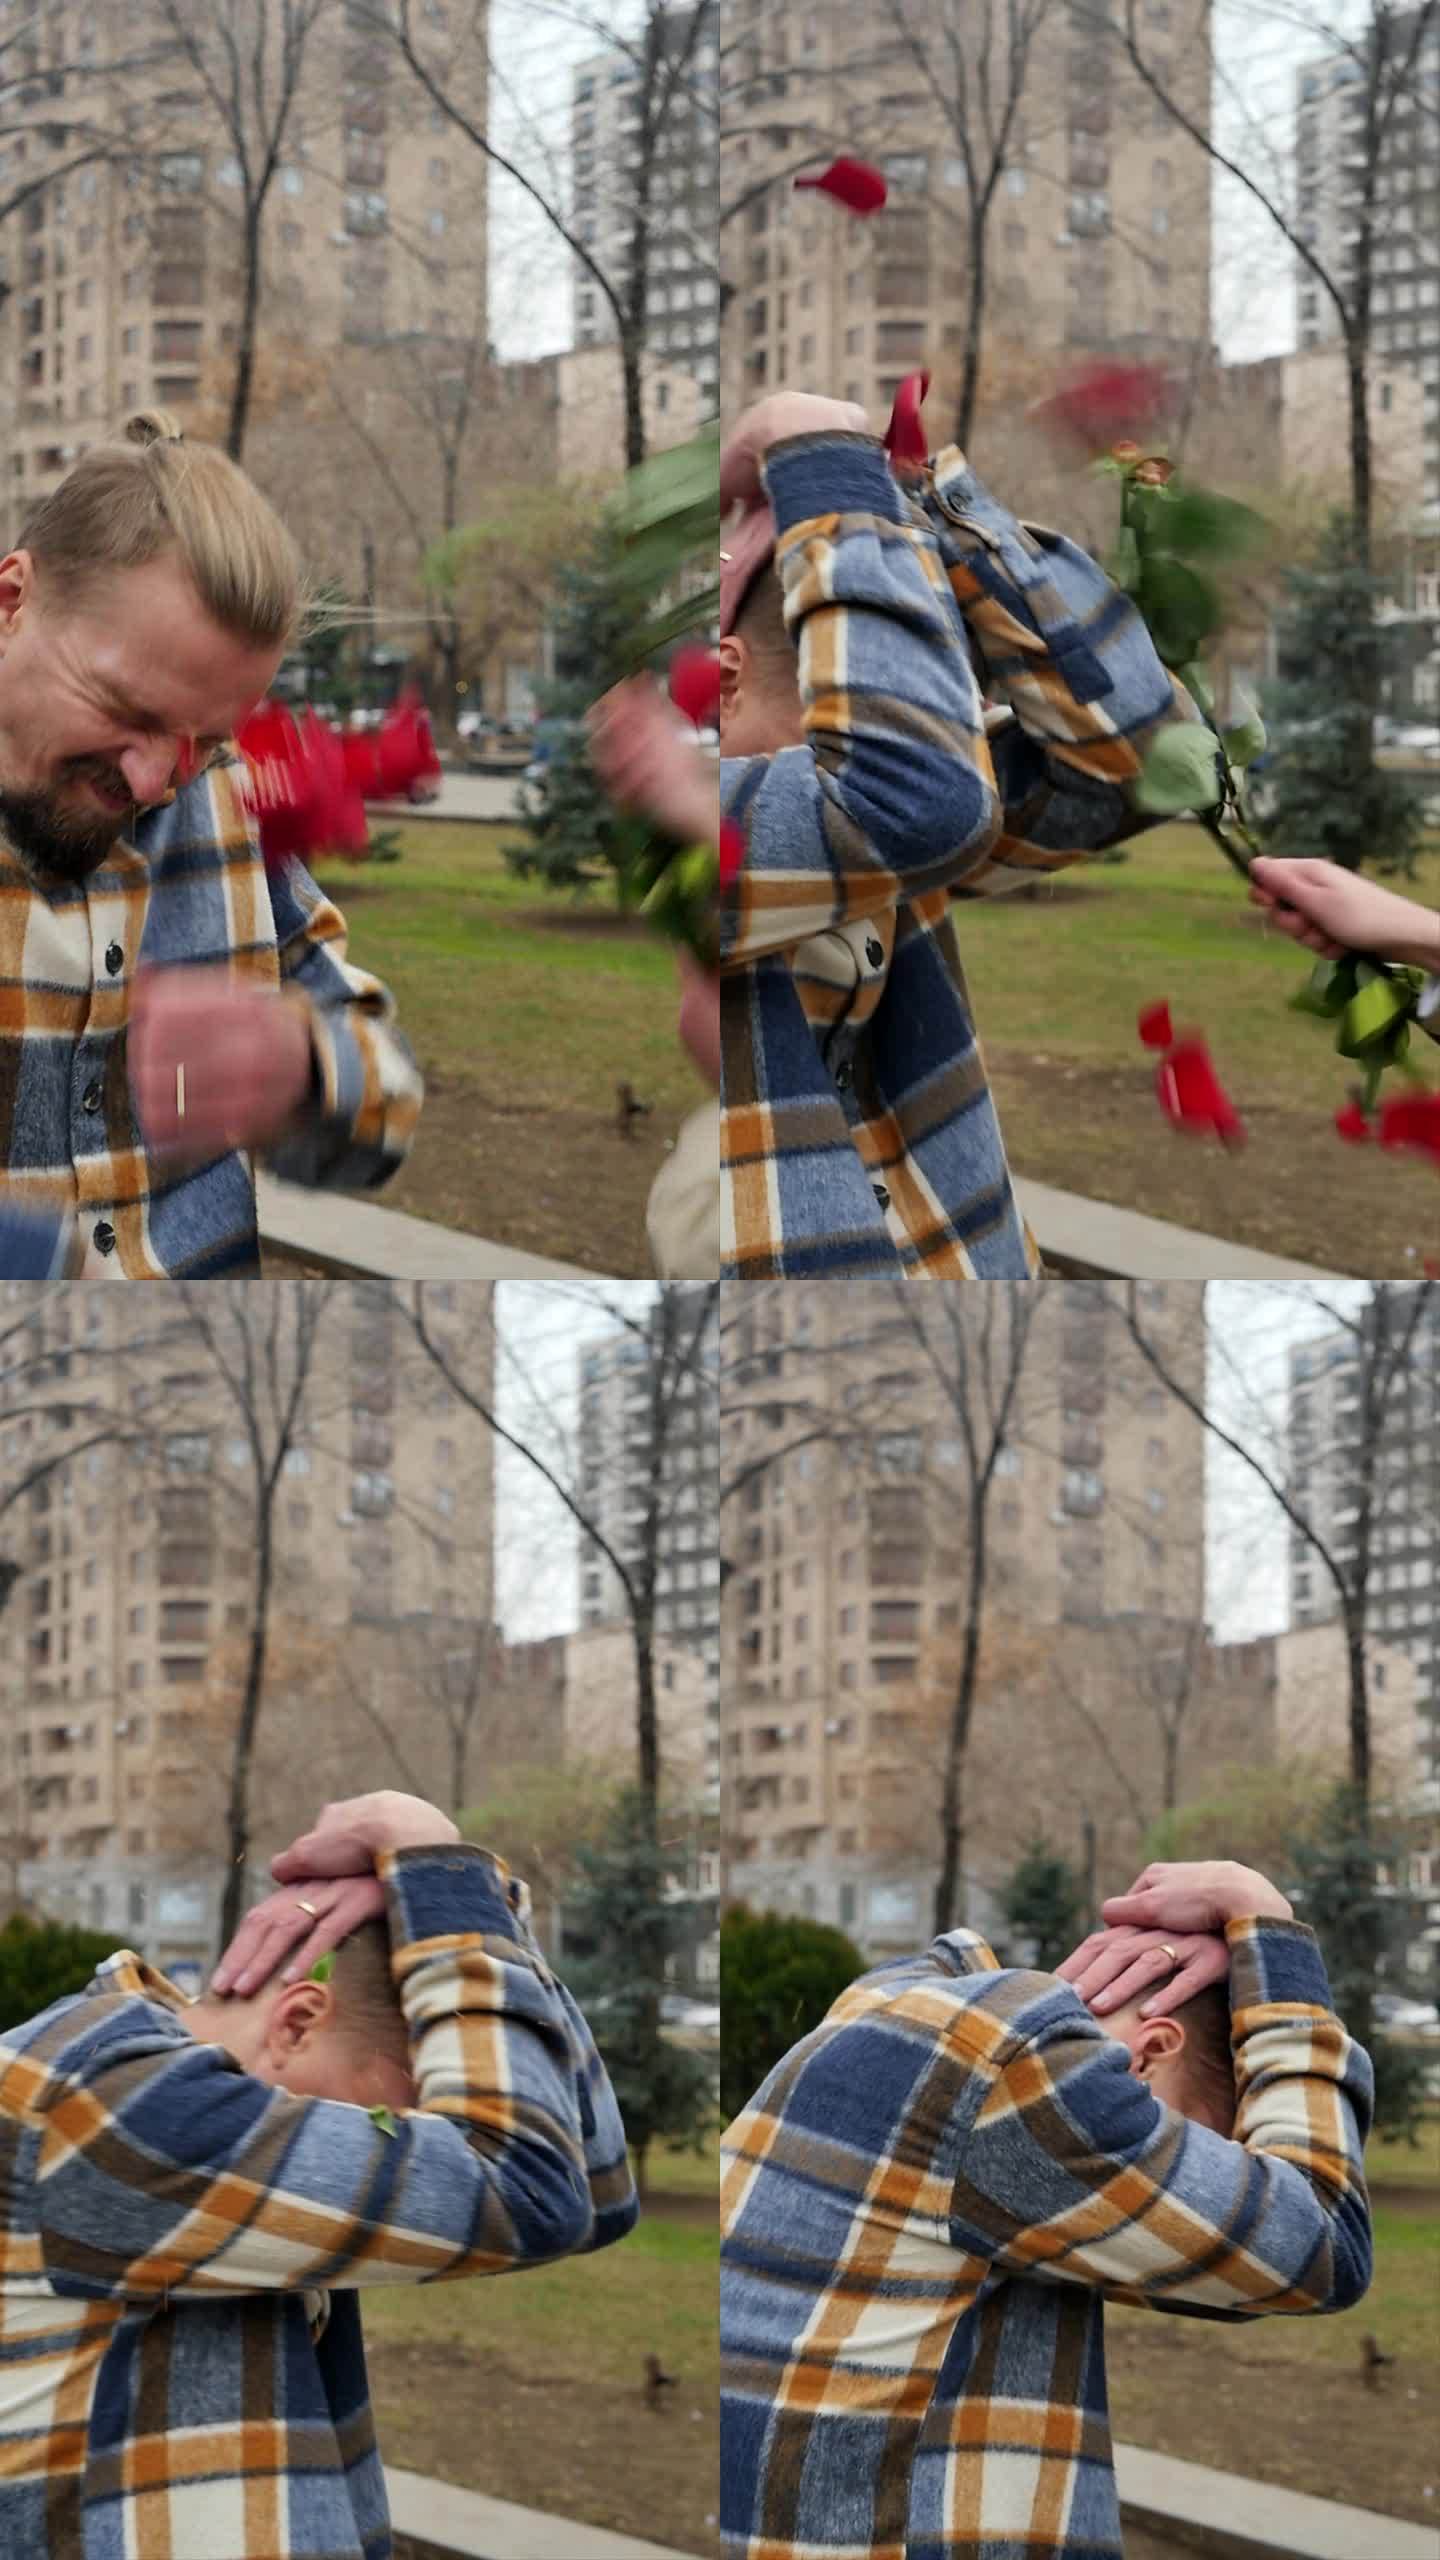 垂直画面:一个愤怒的女人用一束玫瑰花打了一个年轻人。一名男子用手捂住脸和头，以免被女友的鲜花殴打。用